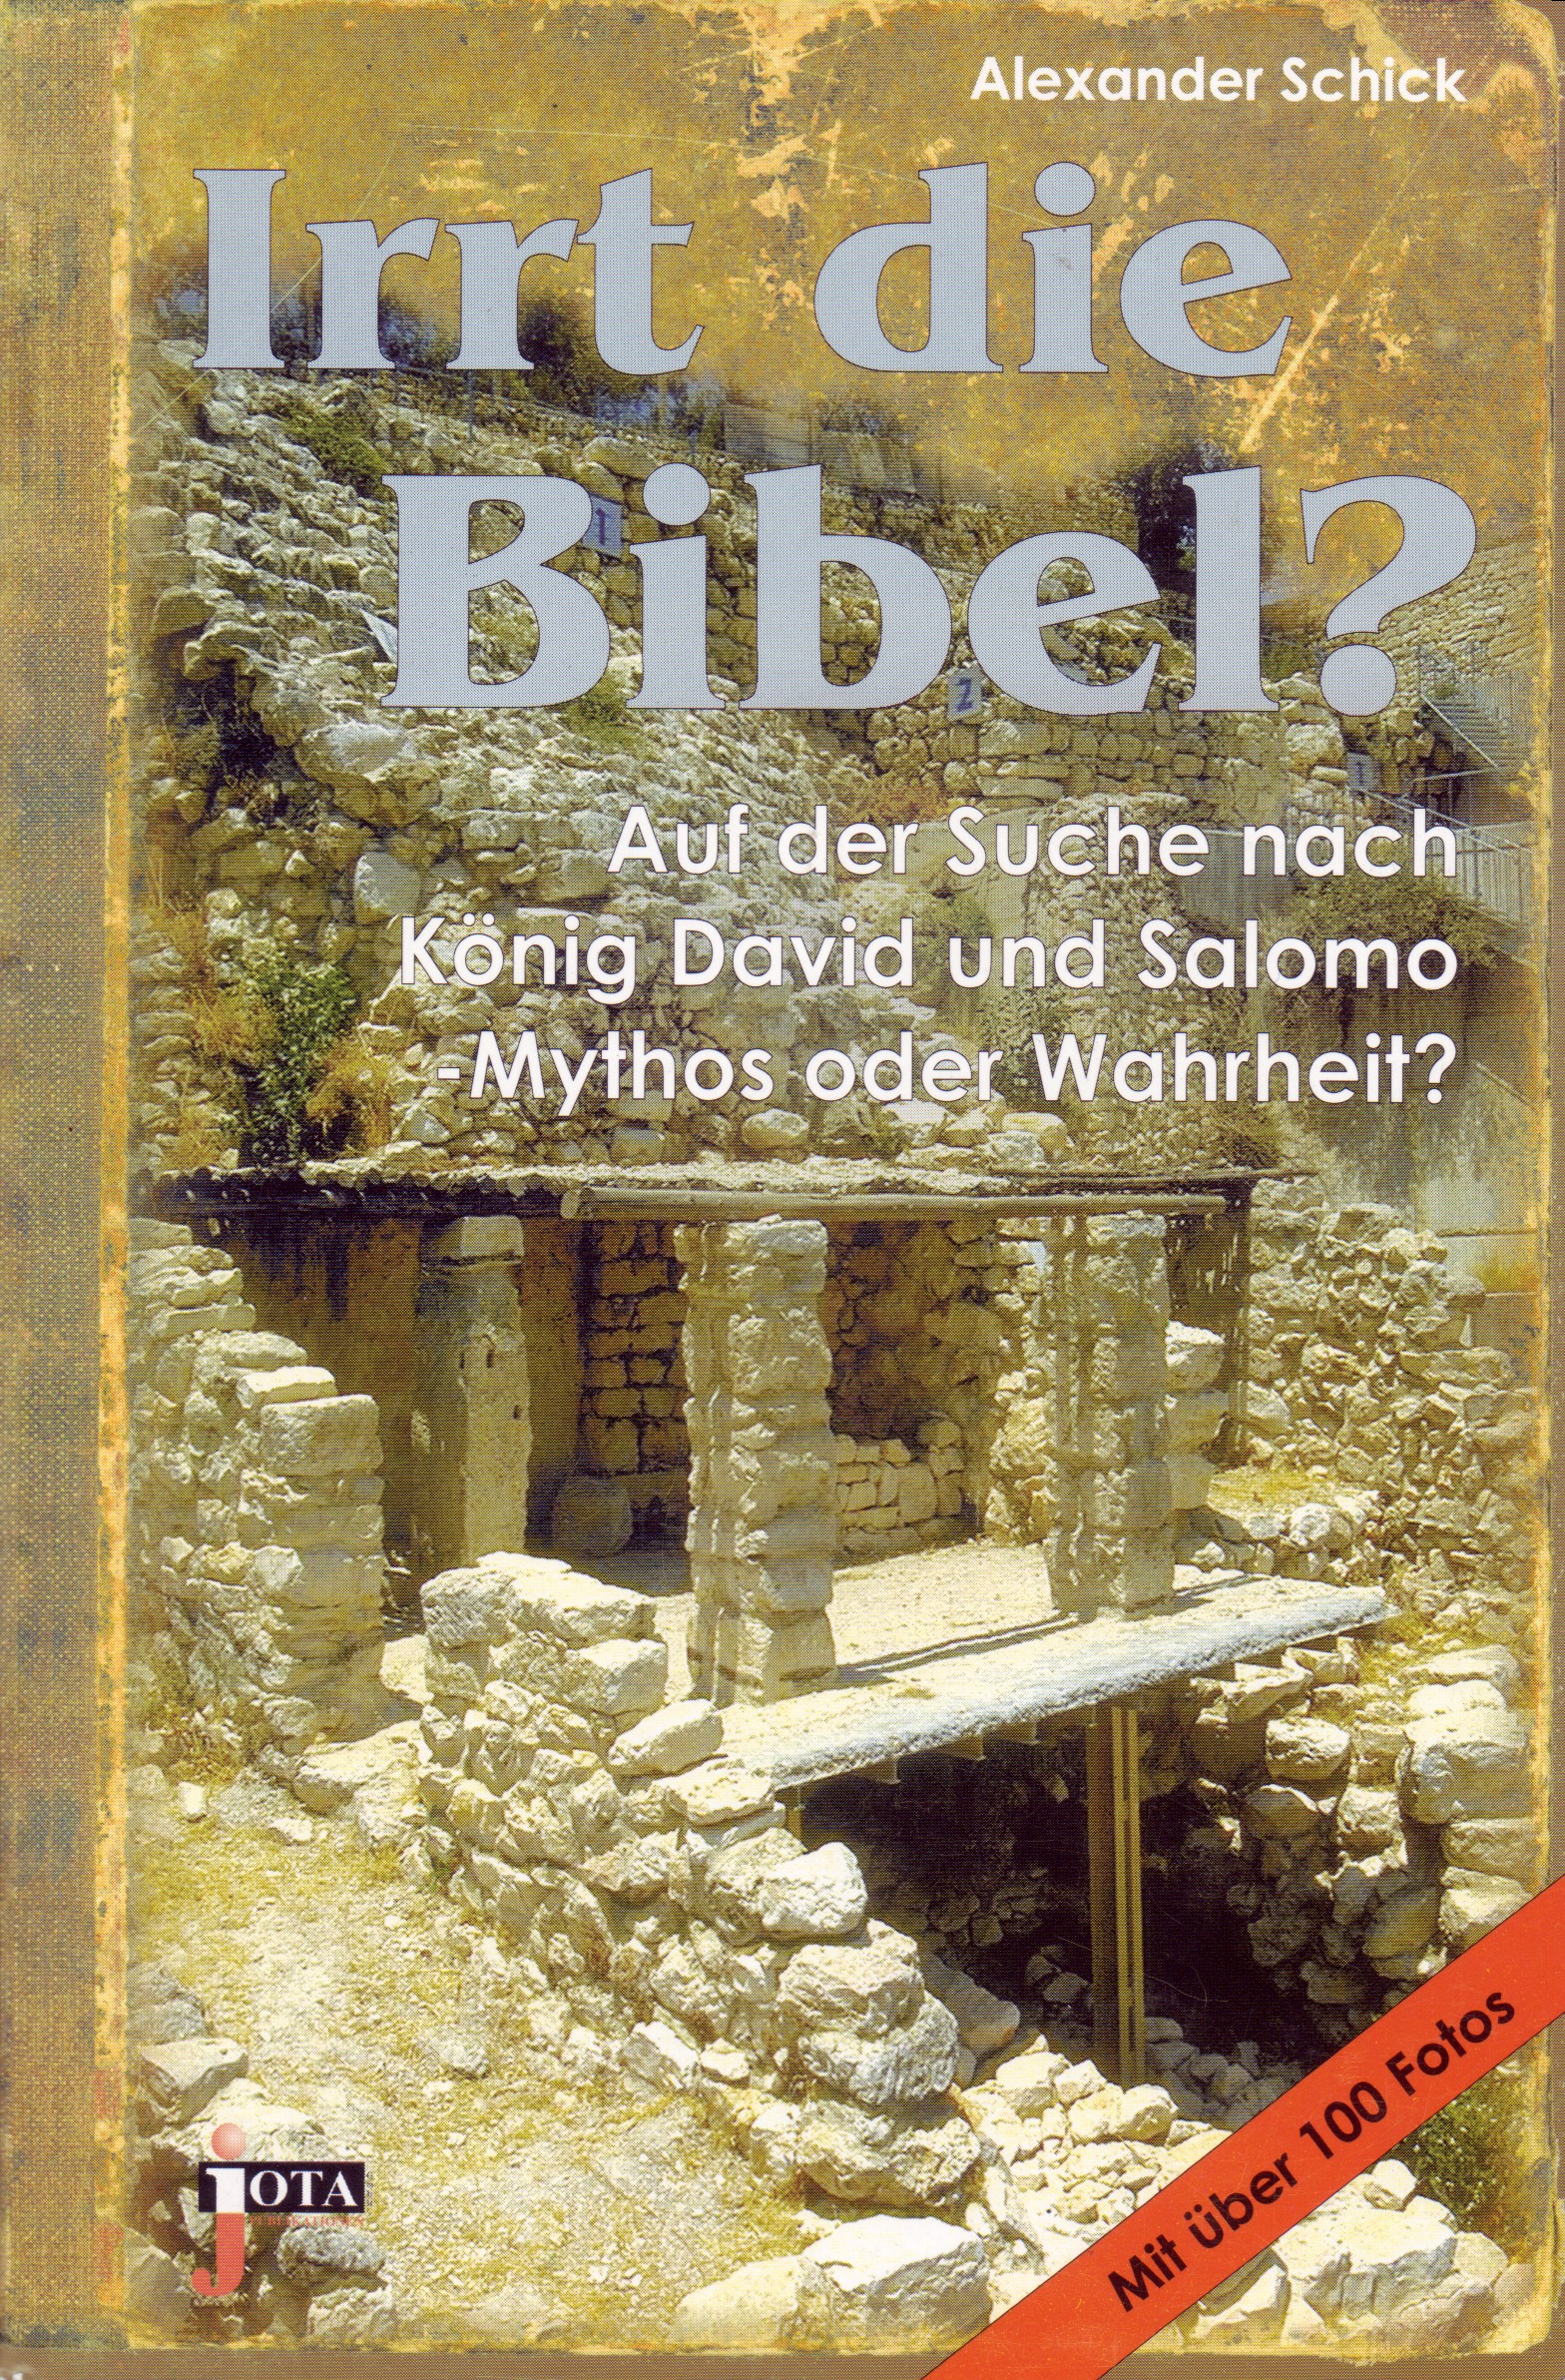 IRRT DIE BIBEL? - AUF DER SUCHE NACH KÖNIG DAVID UND SALOMO - MYTHOS ODER WAHRHEIT?